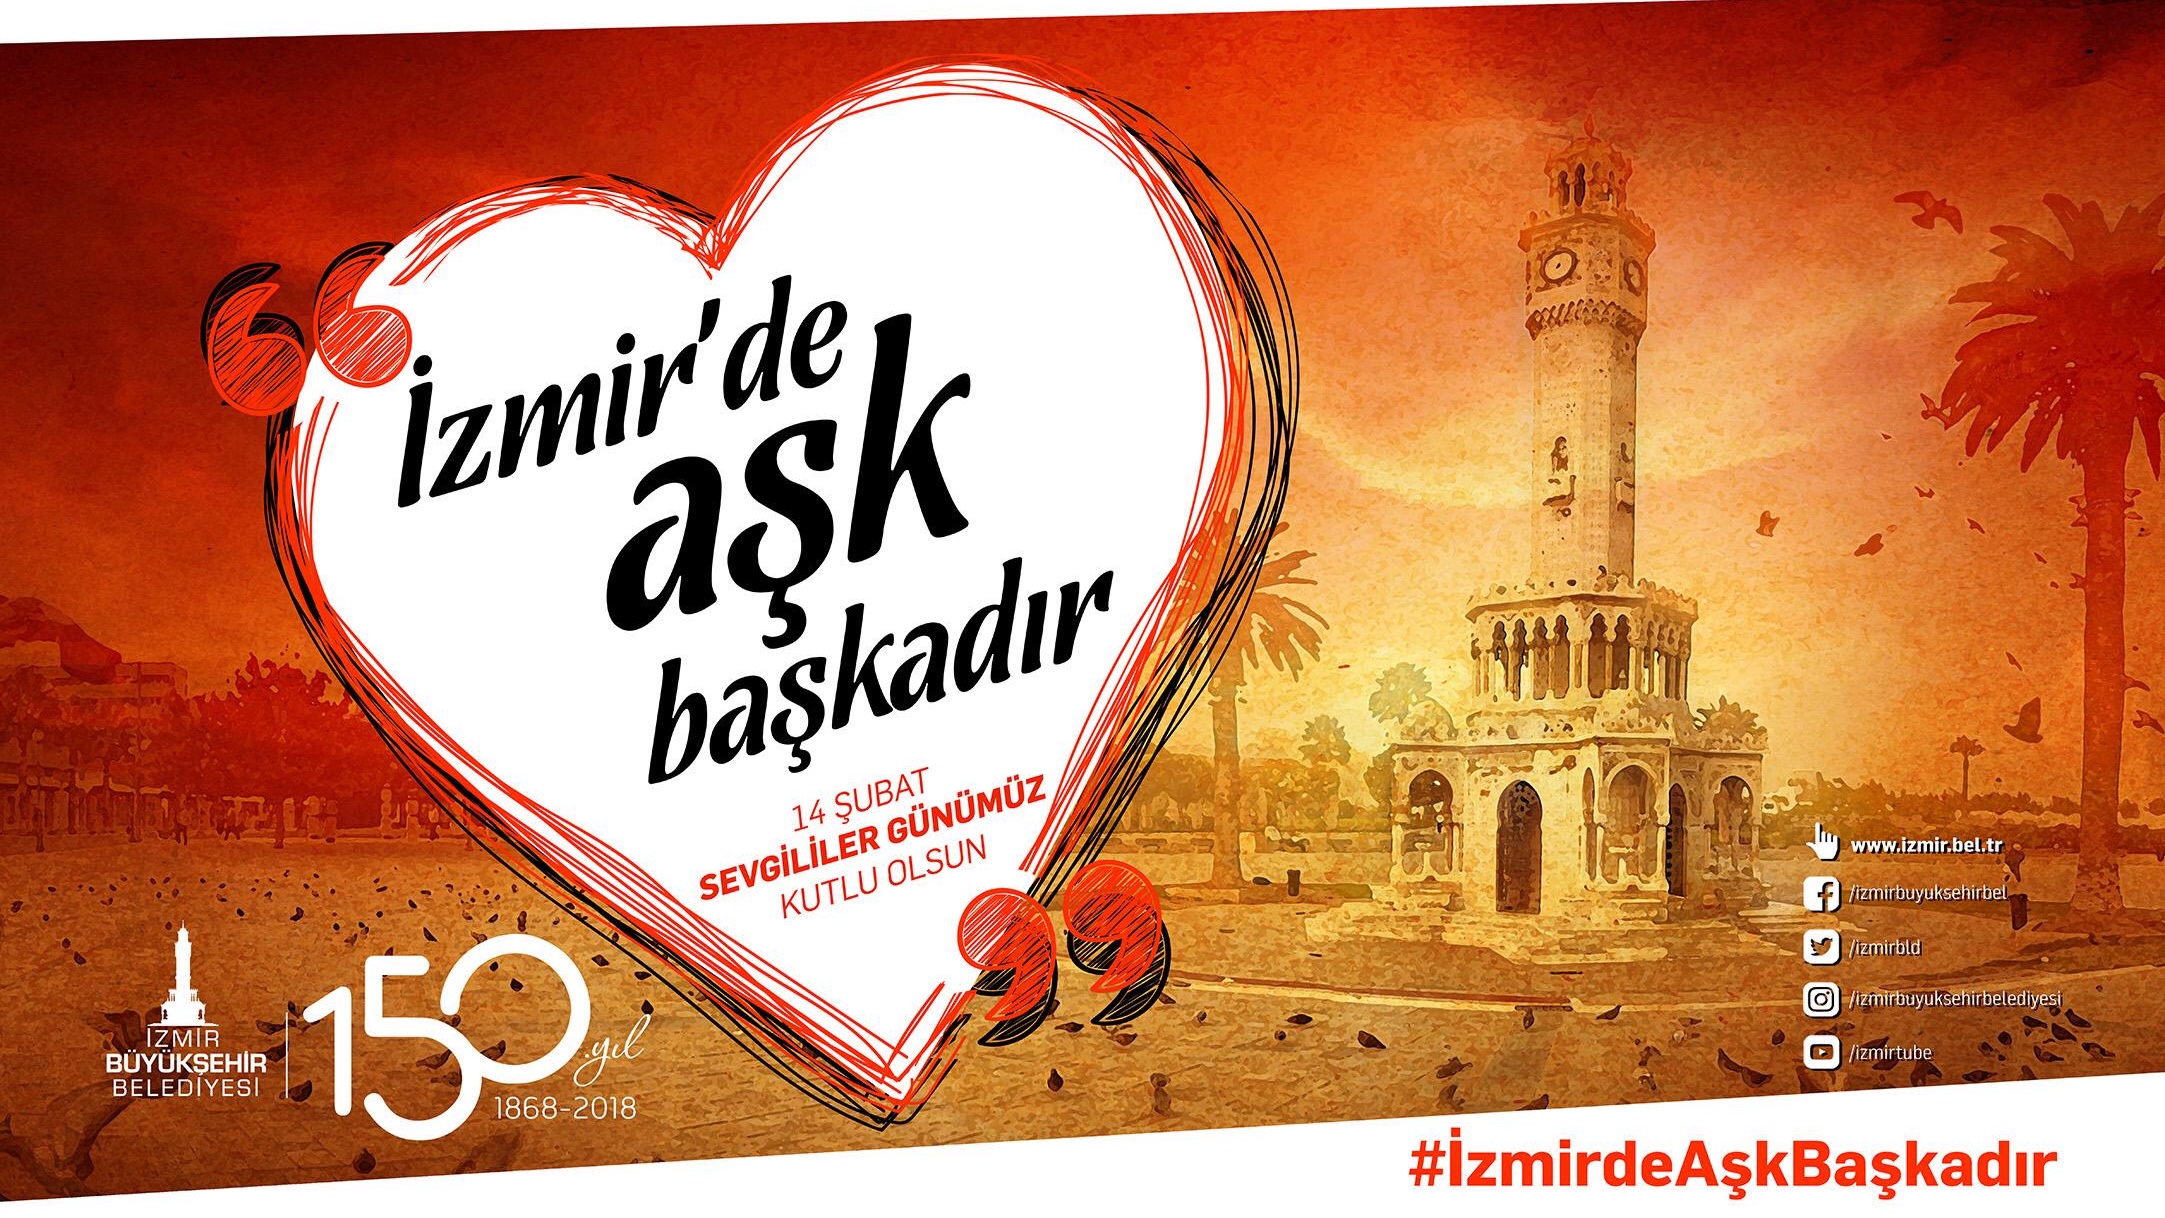 İzmir’de aşk başkadır